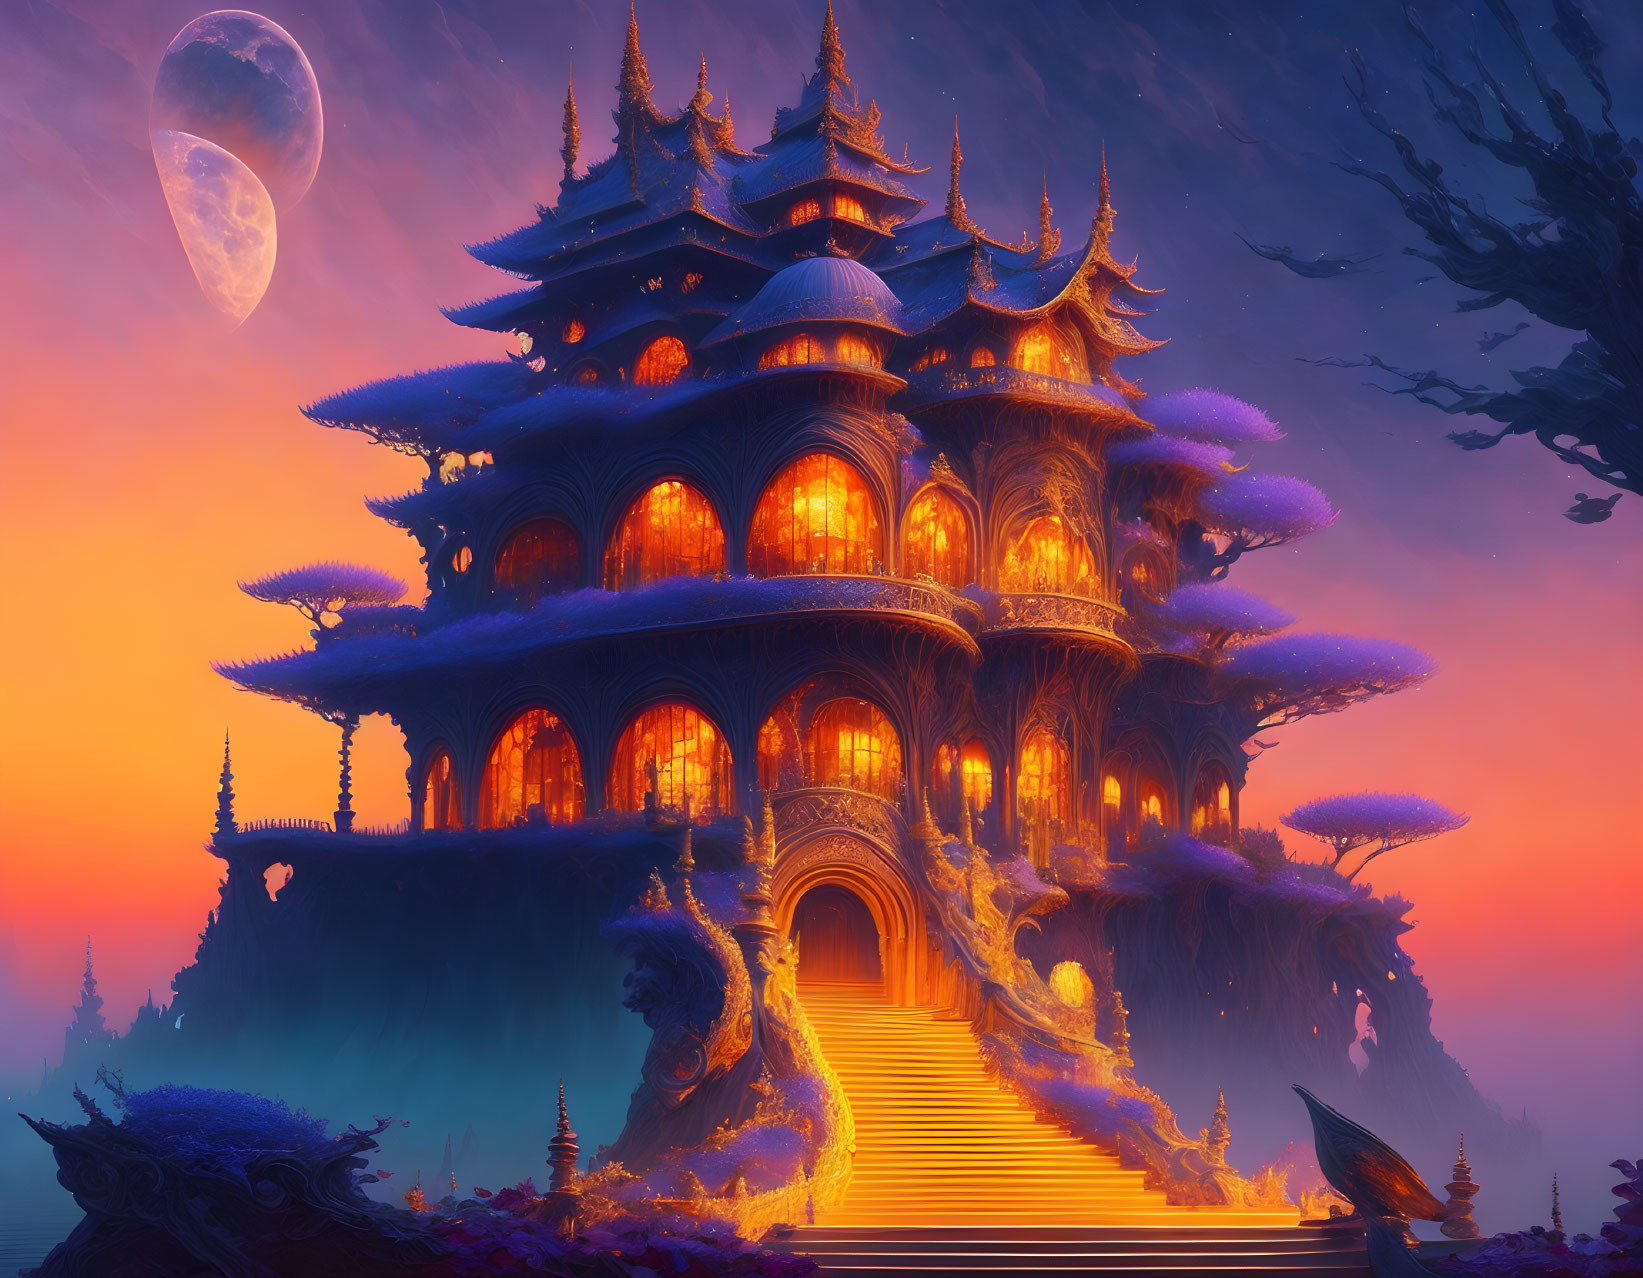 Ornate multi-tiered palace against twilight sky